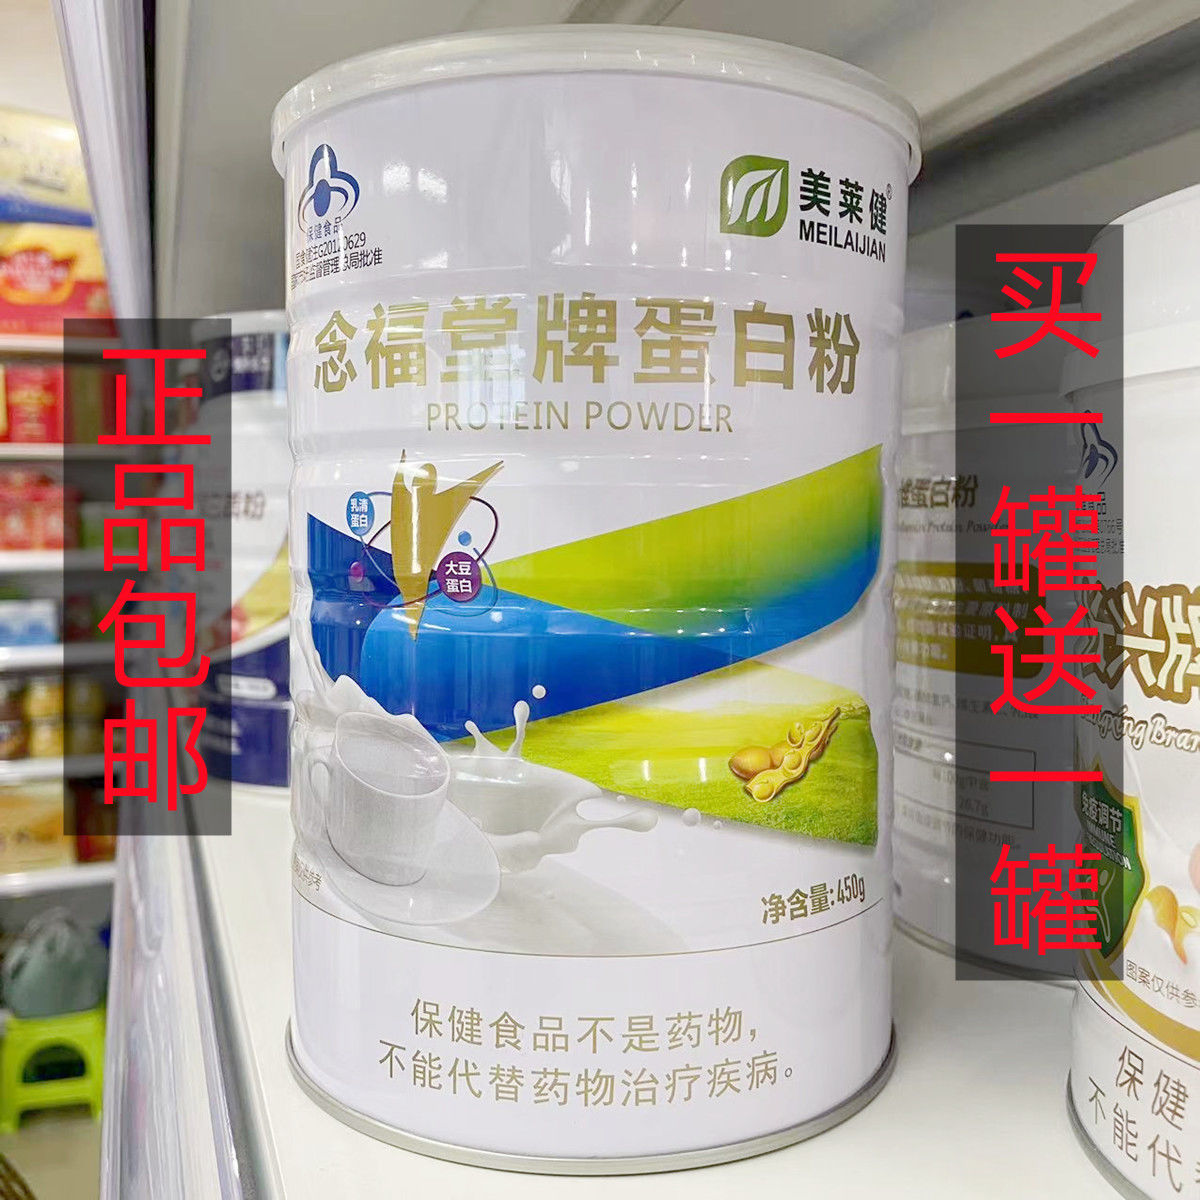 【买1罐送1罐】美莱健念福堂牌蛋白粉450g每罐 大豆蛋白乳清蛋白